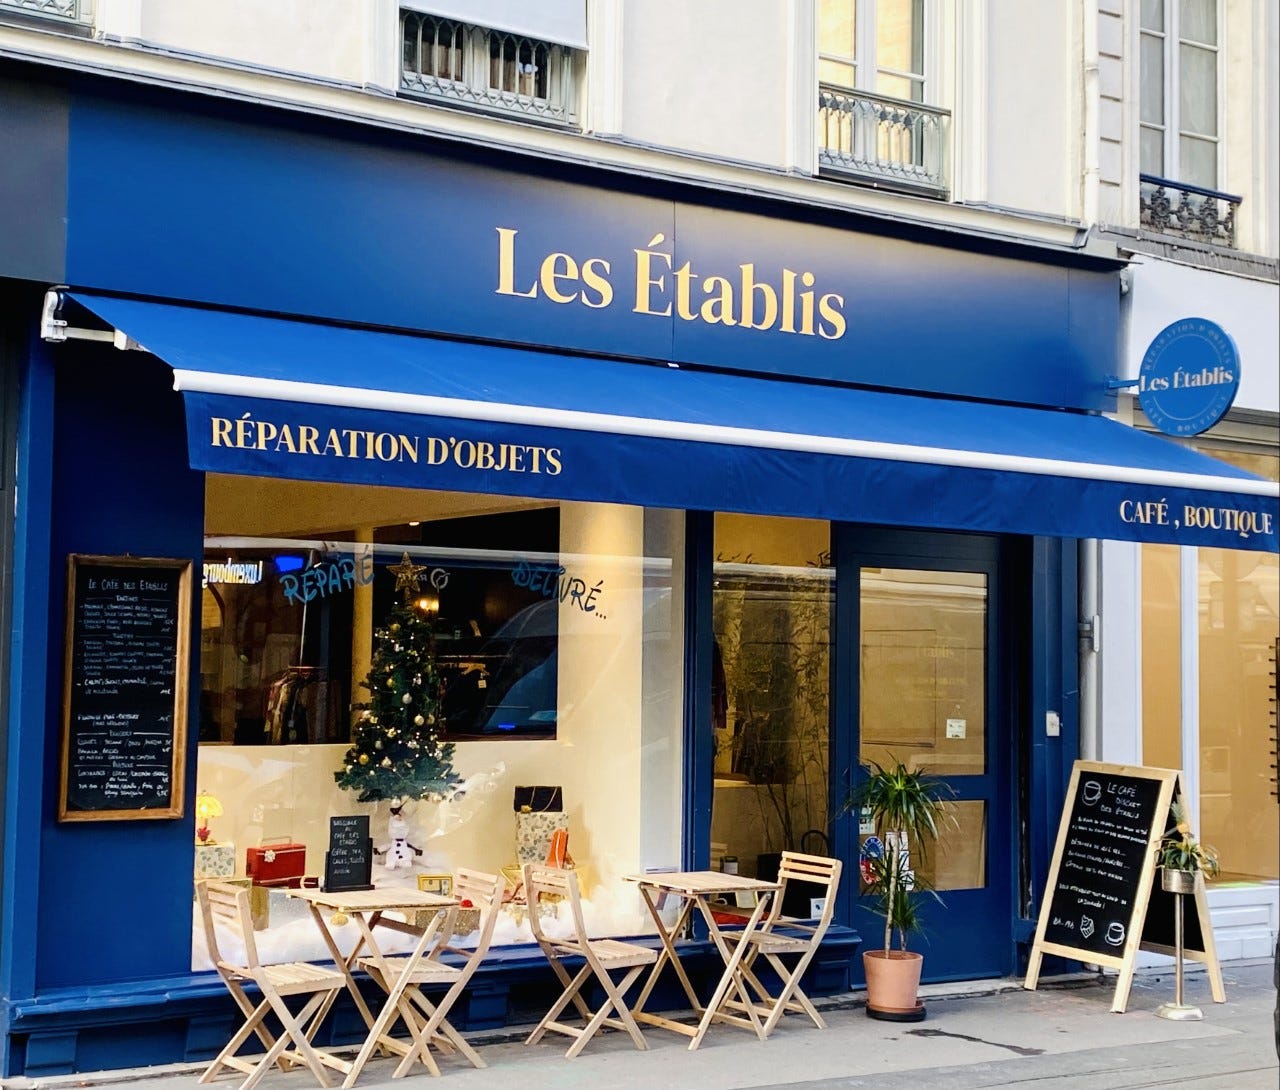 Les Etablis, une «conciergerie» de la réparation en plein Paris – Libération